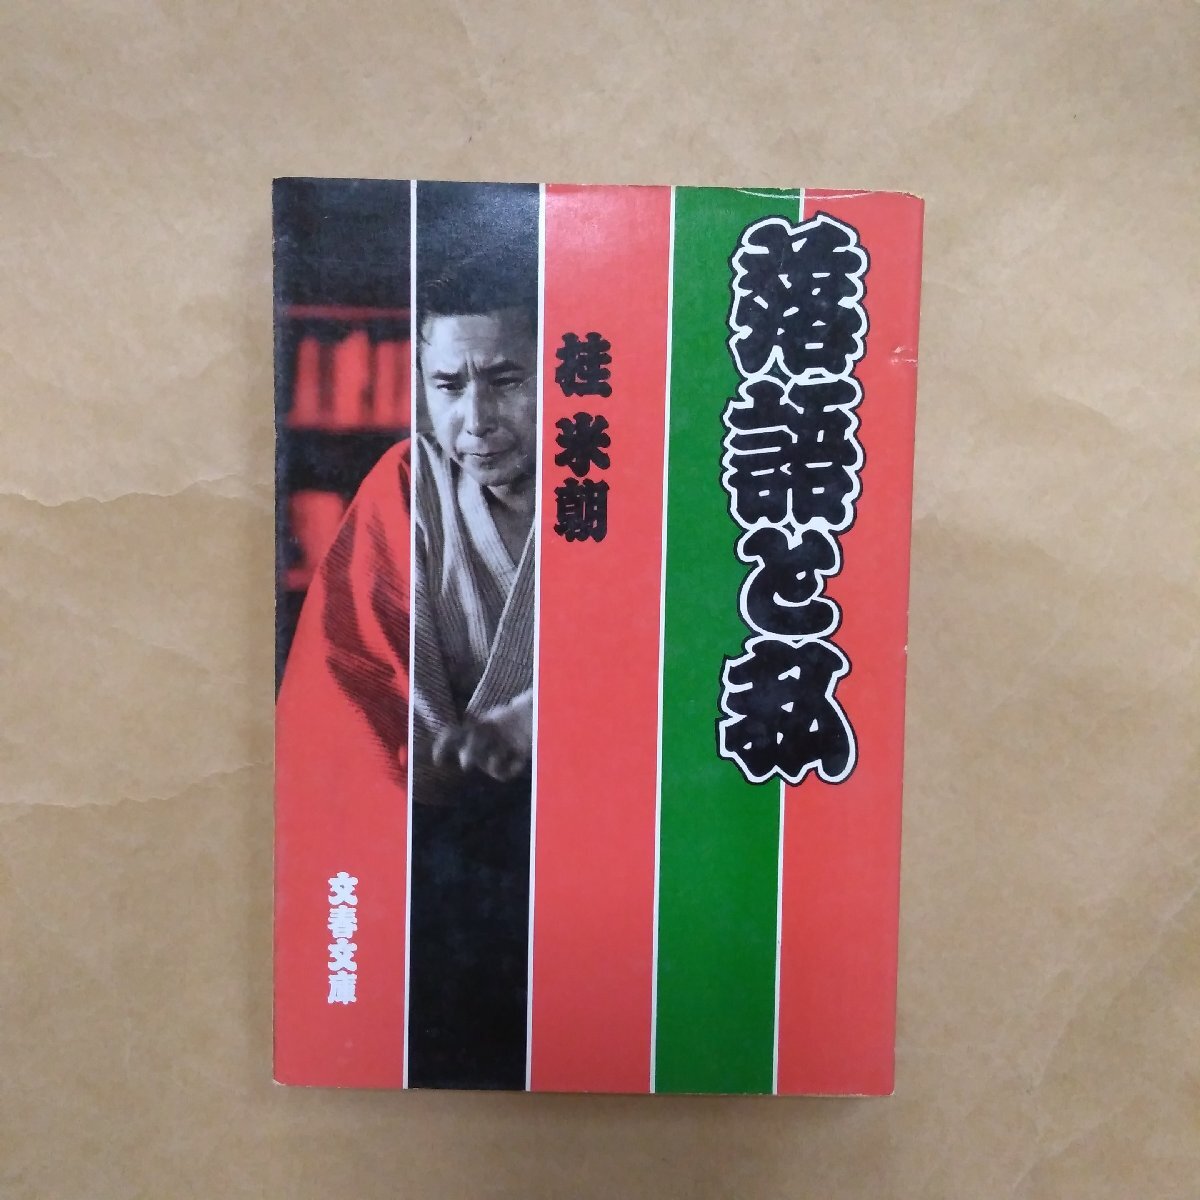 * комические истории . я багряник японский рис утро Bunshun Bunko 1986 год первая версия 